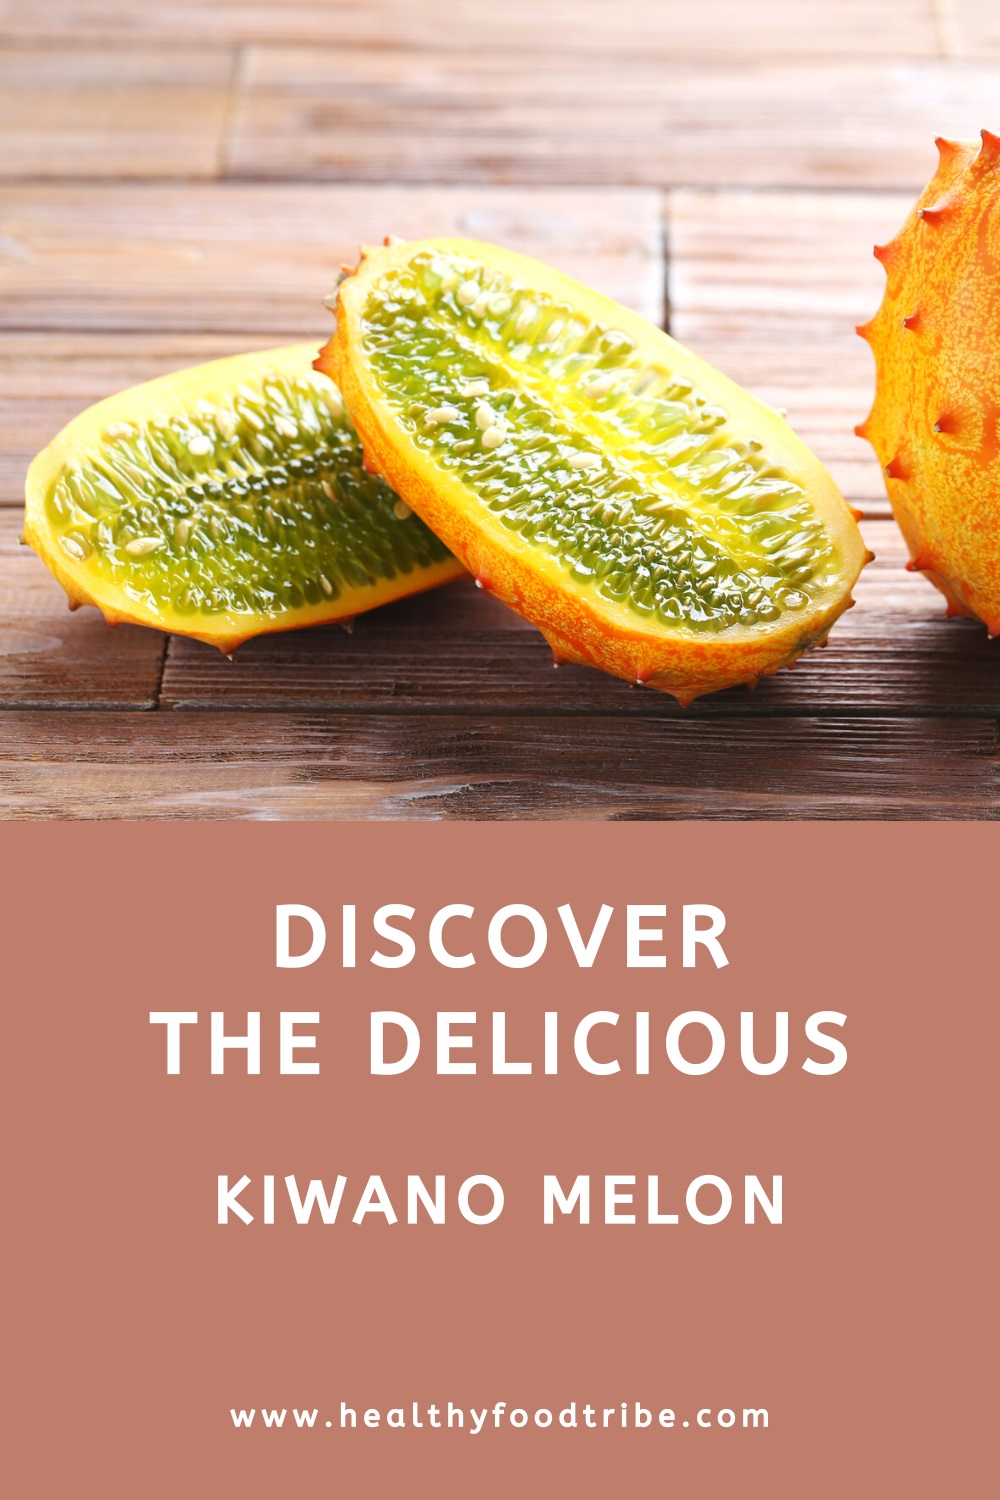 Discover the spiky kiwano melon